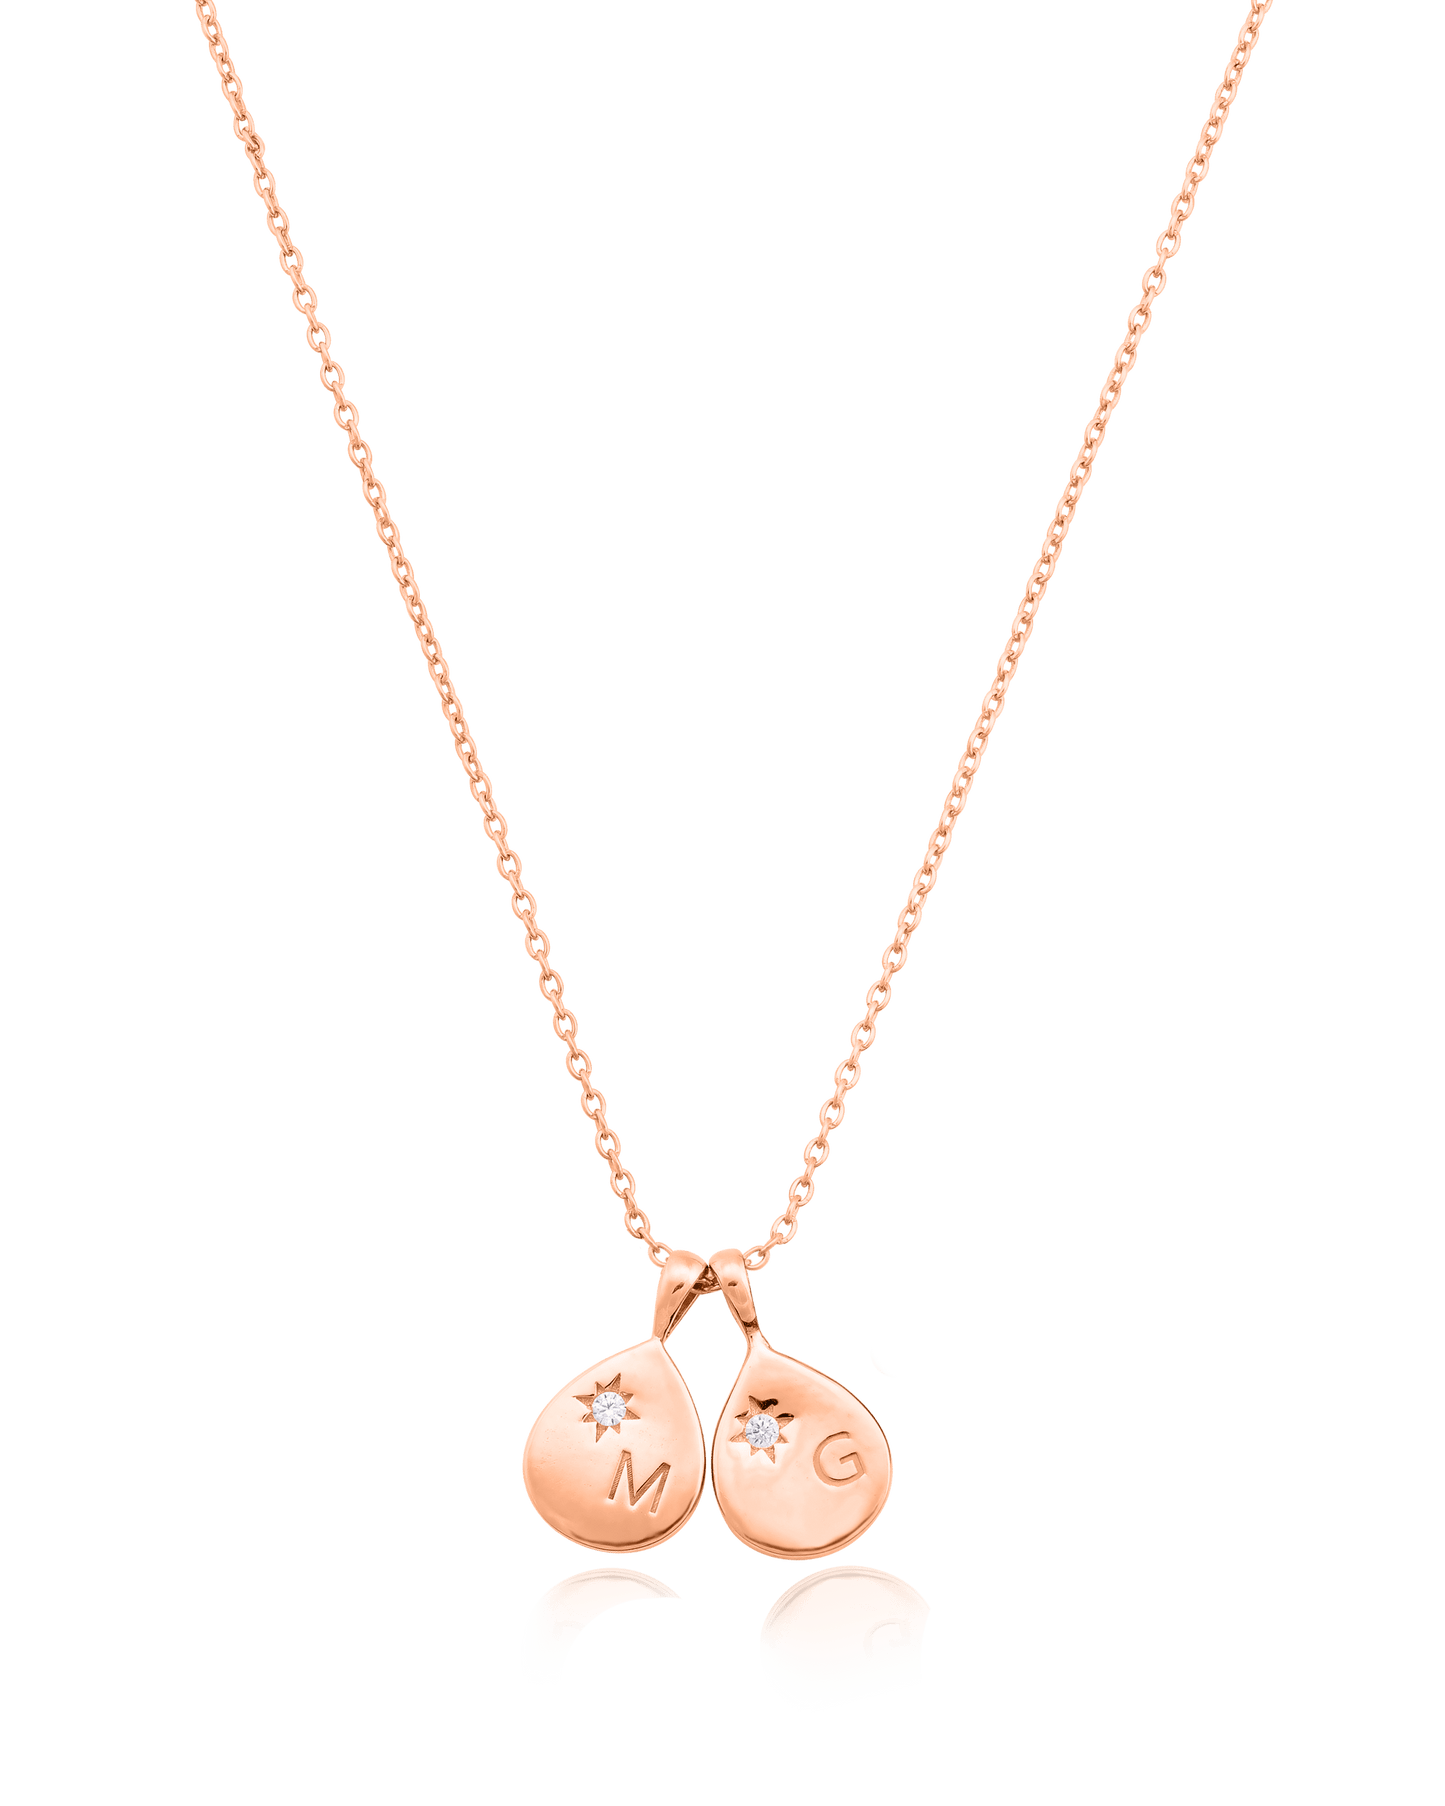 Diamond Drop Initial Necklace - 18K Rose Vermeil Necklaces magal-dev 2 Drops 16”+2” extender 